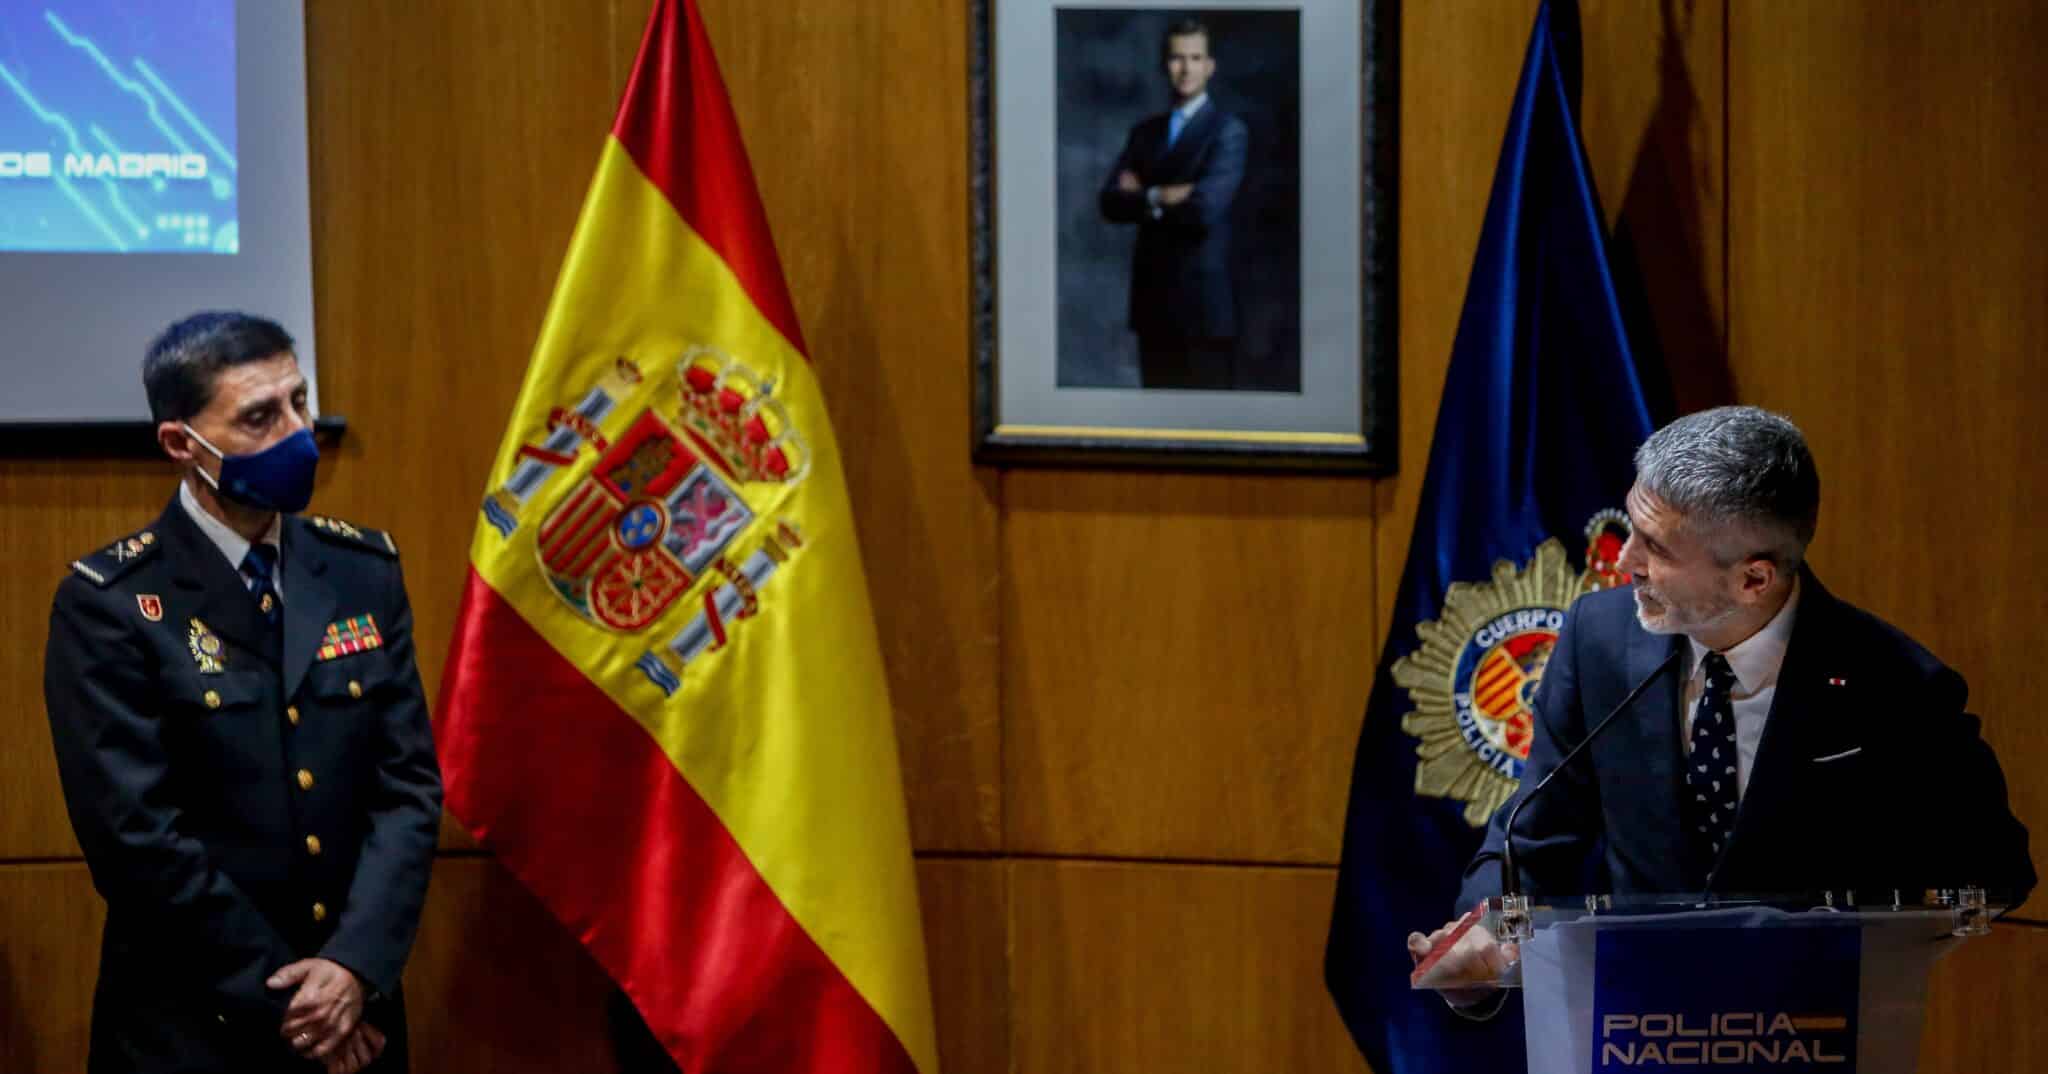 El ministro Grande-Marlaska junto con el actual jefe superior de la Policía en Madrid, Manuel Soto Seoane.